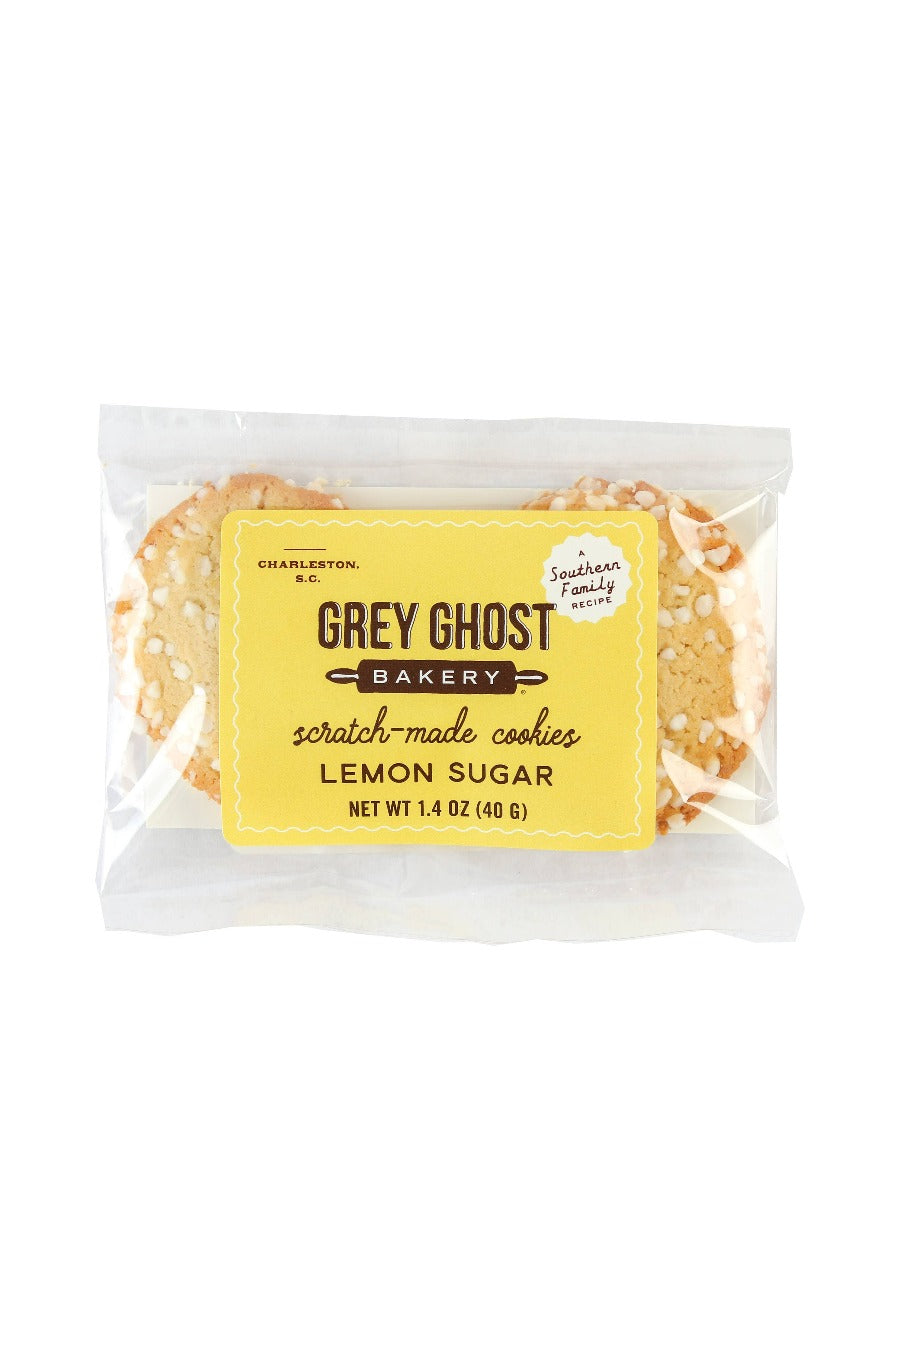  Lemon Sugar Cookies - Grey Ghost Bakery